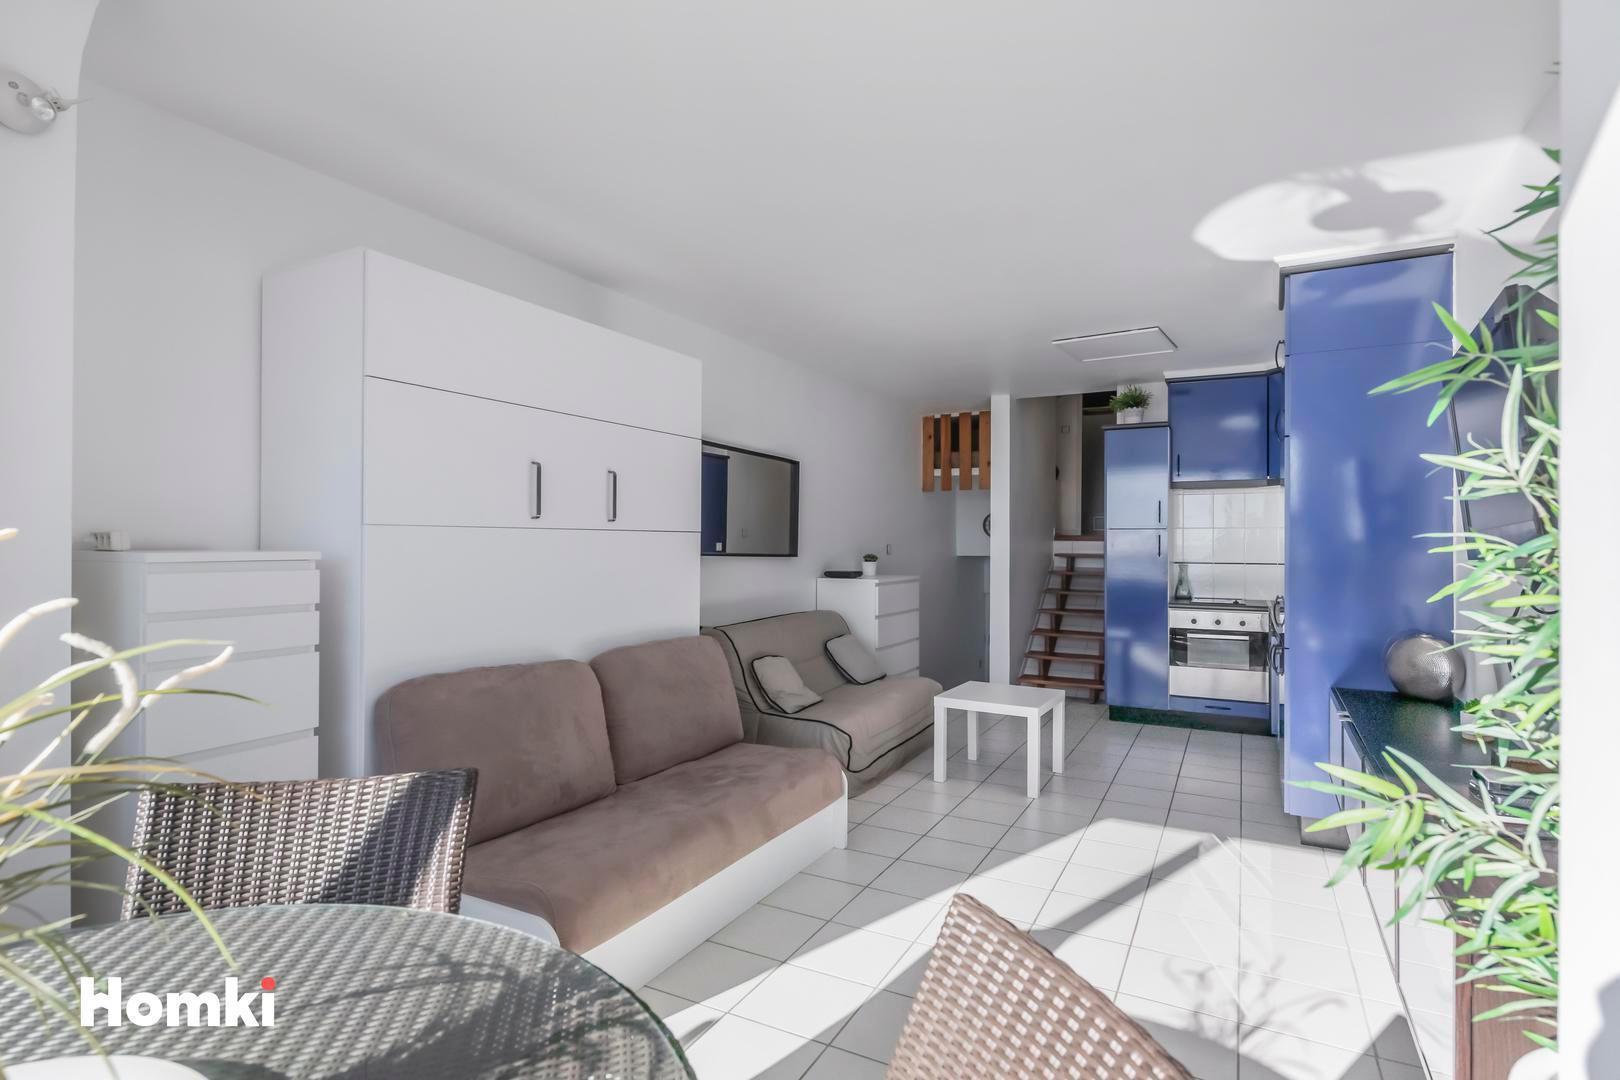 Homki - Vente Appartement  de 27.0 m² à La Grande-Motte 34280